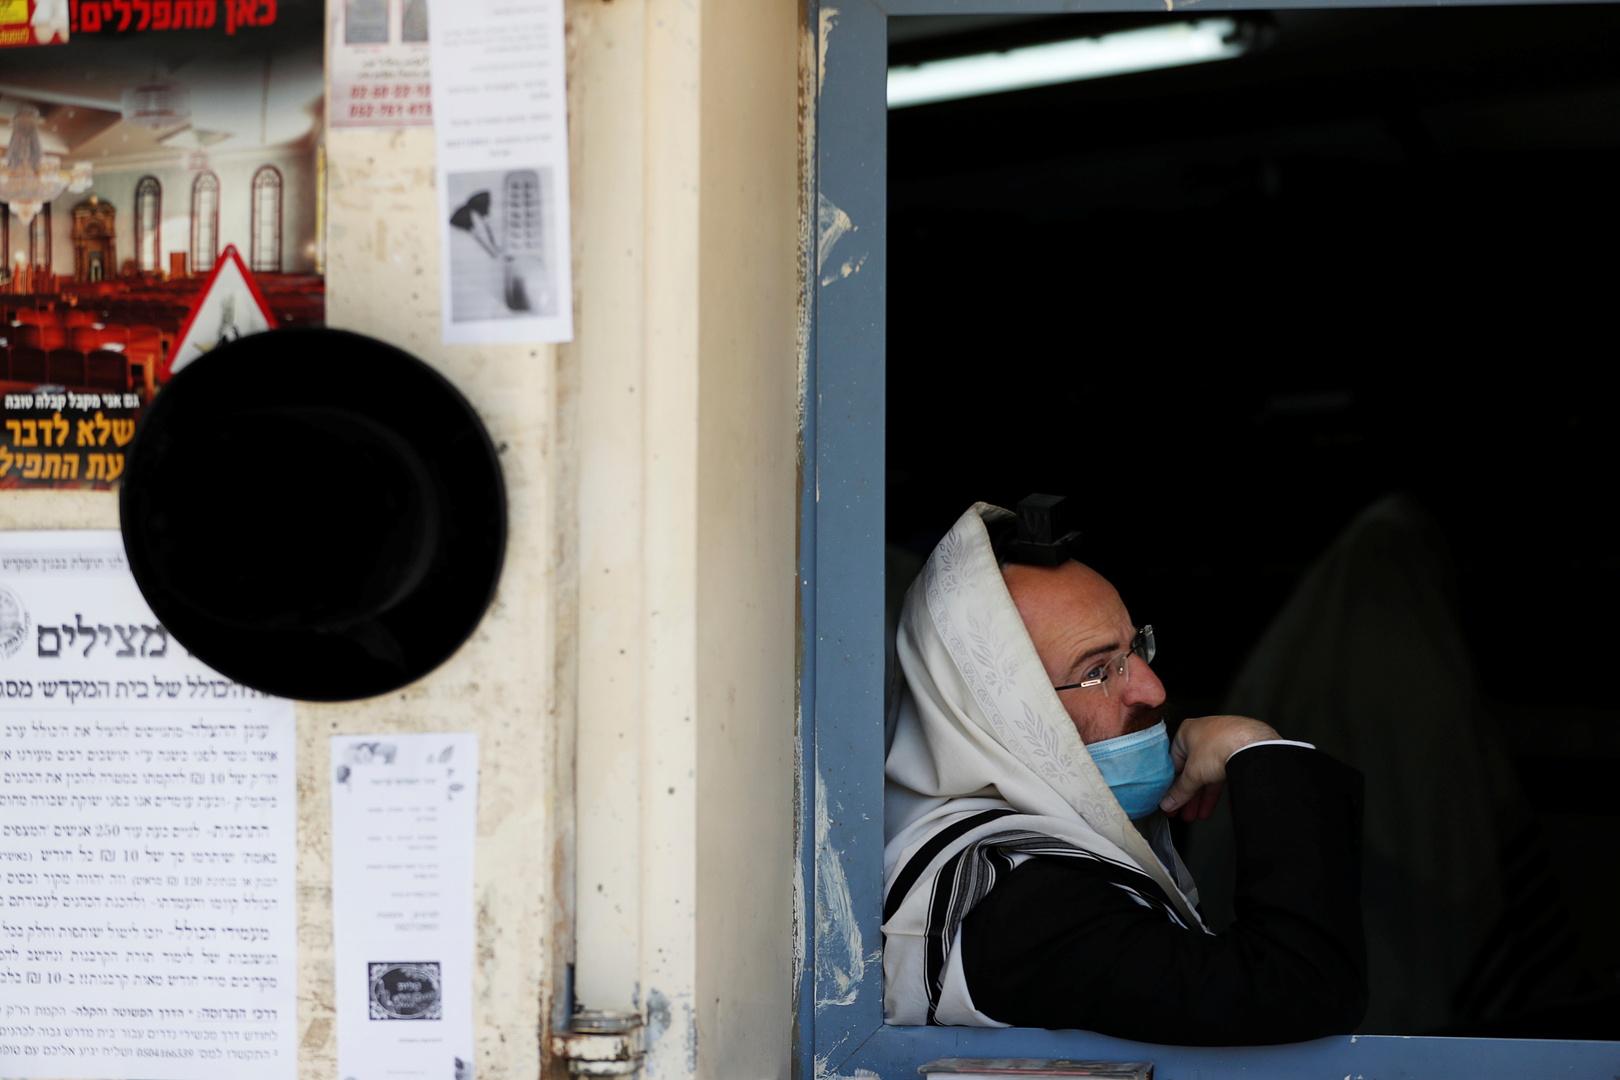 إصابات كورونا تسجل أكبر ارتفاع يومي في إسرائيل منذ بداية الجائحة